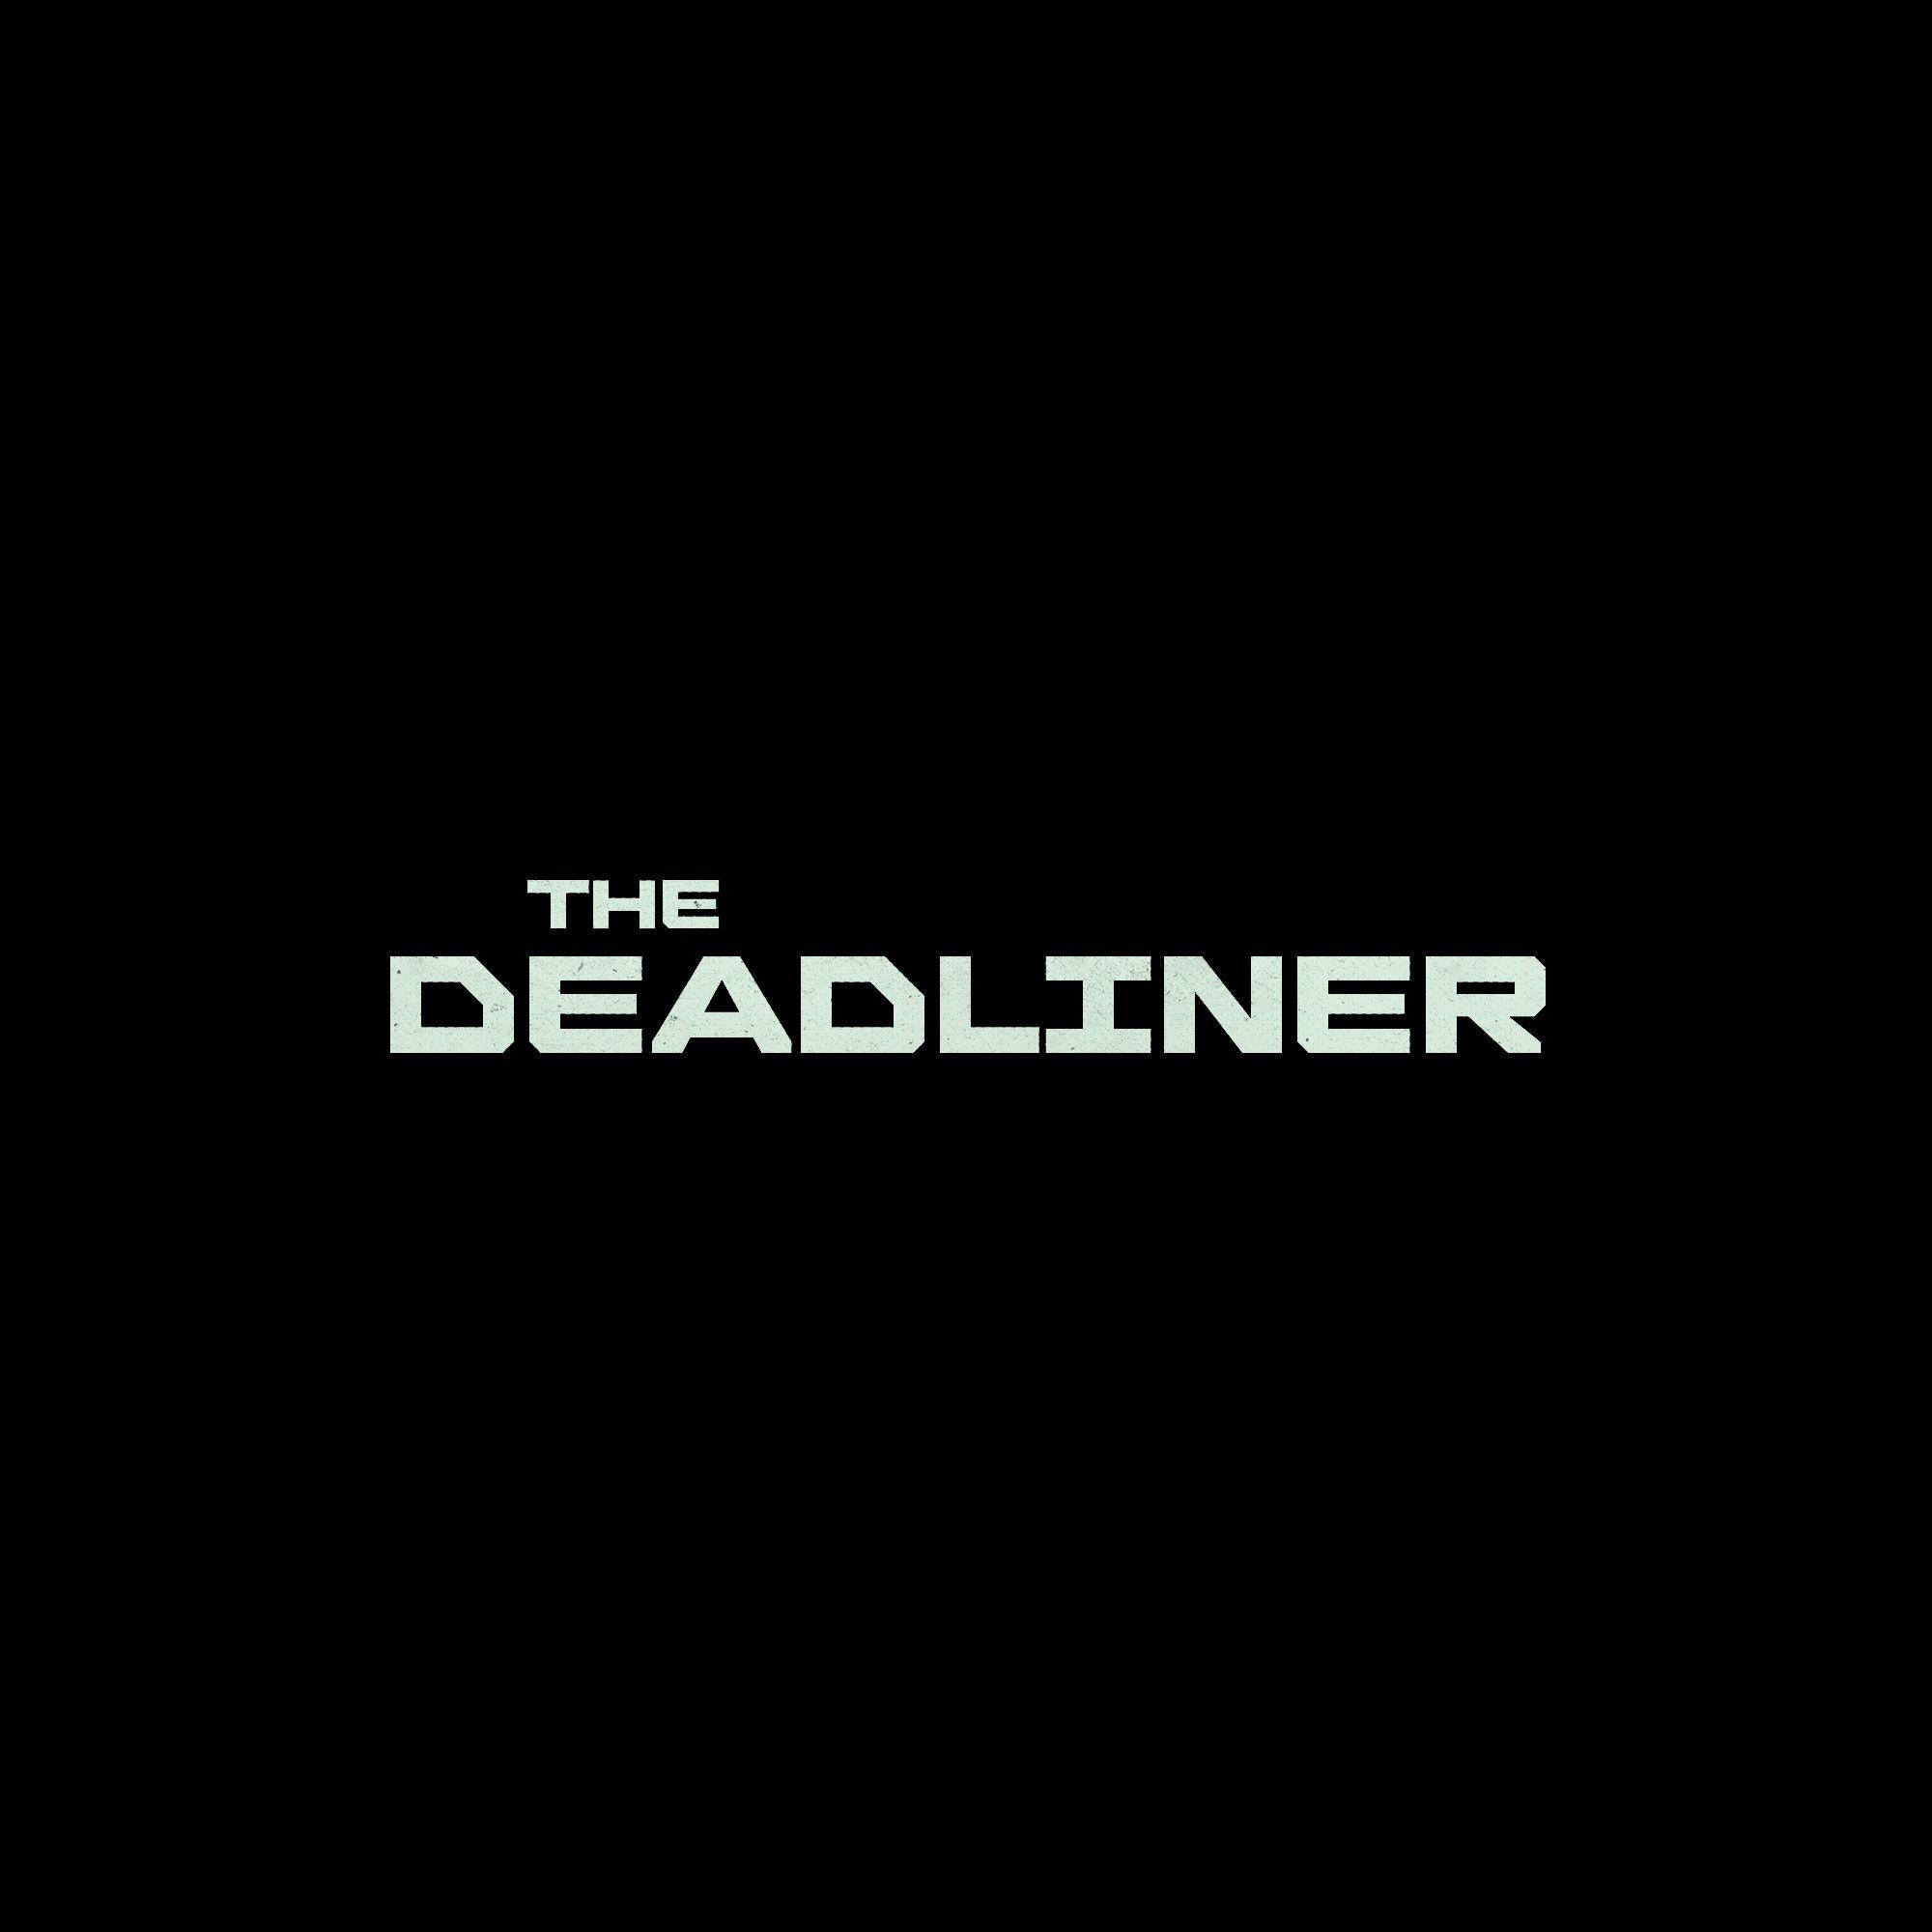 THE DEADLINER